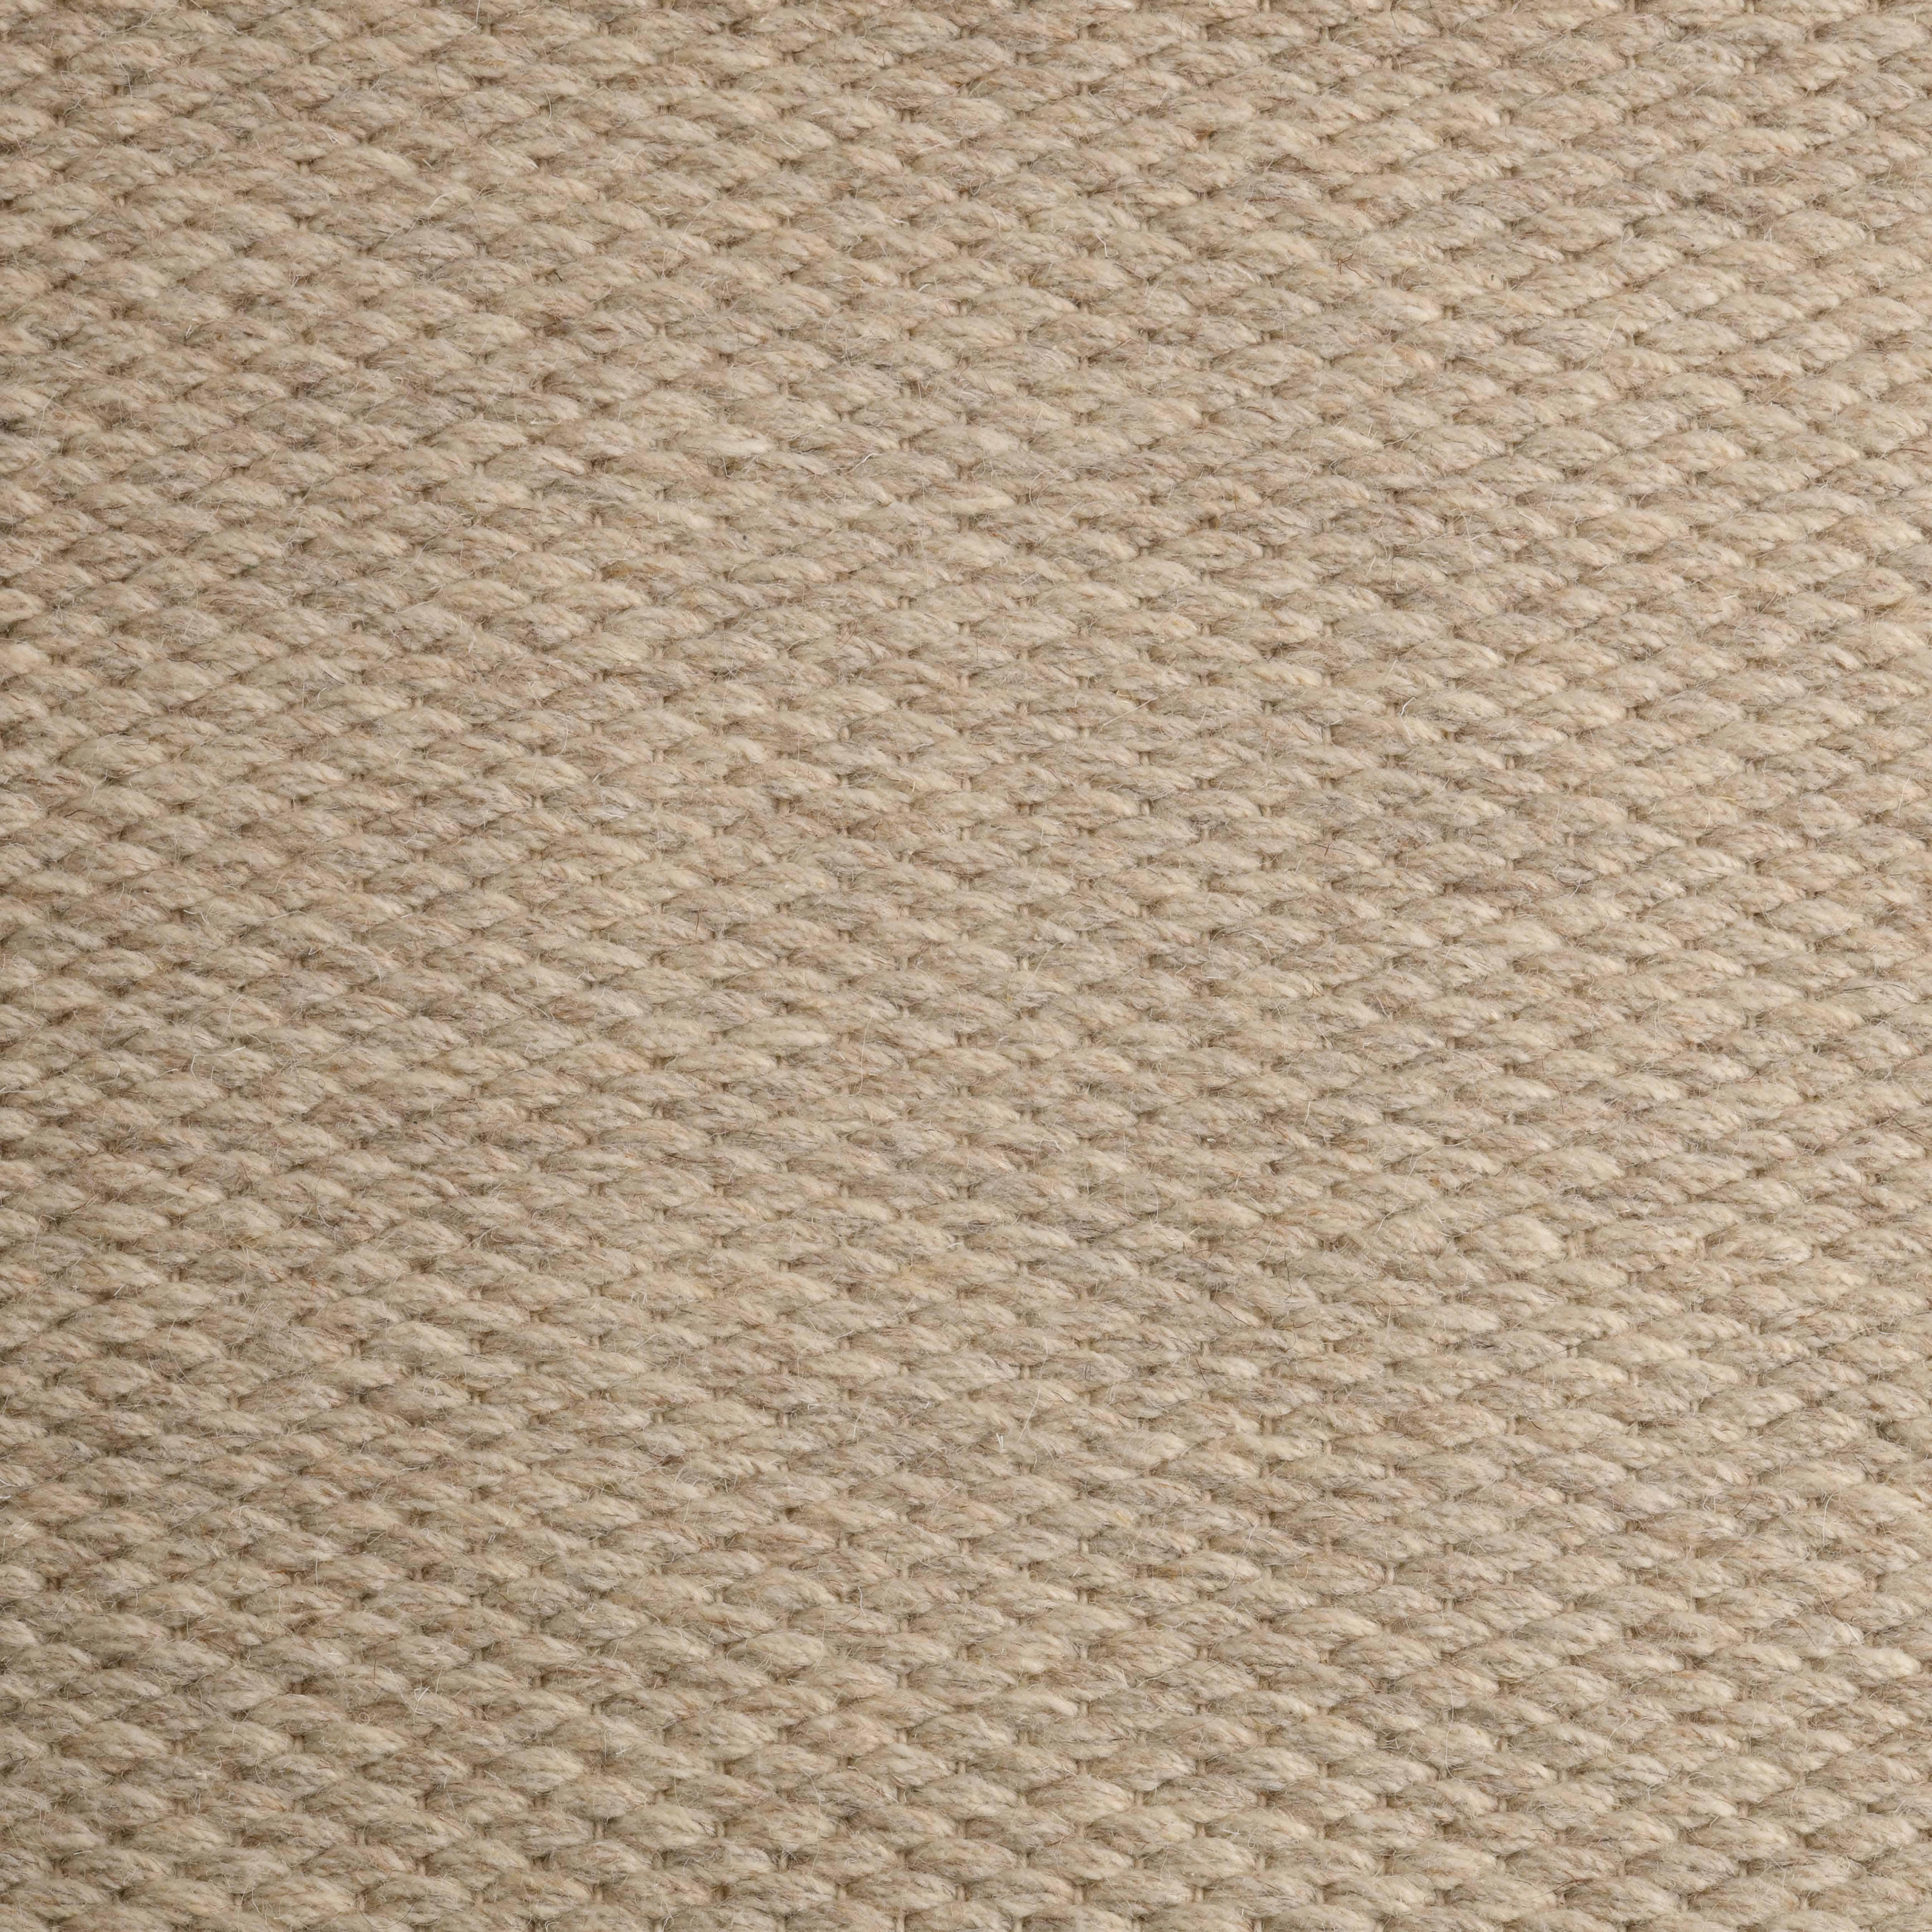 Quies, Beige, Handwoven, New Zealand and Mediterranean wools, 6' x 9'